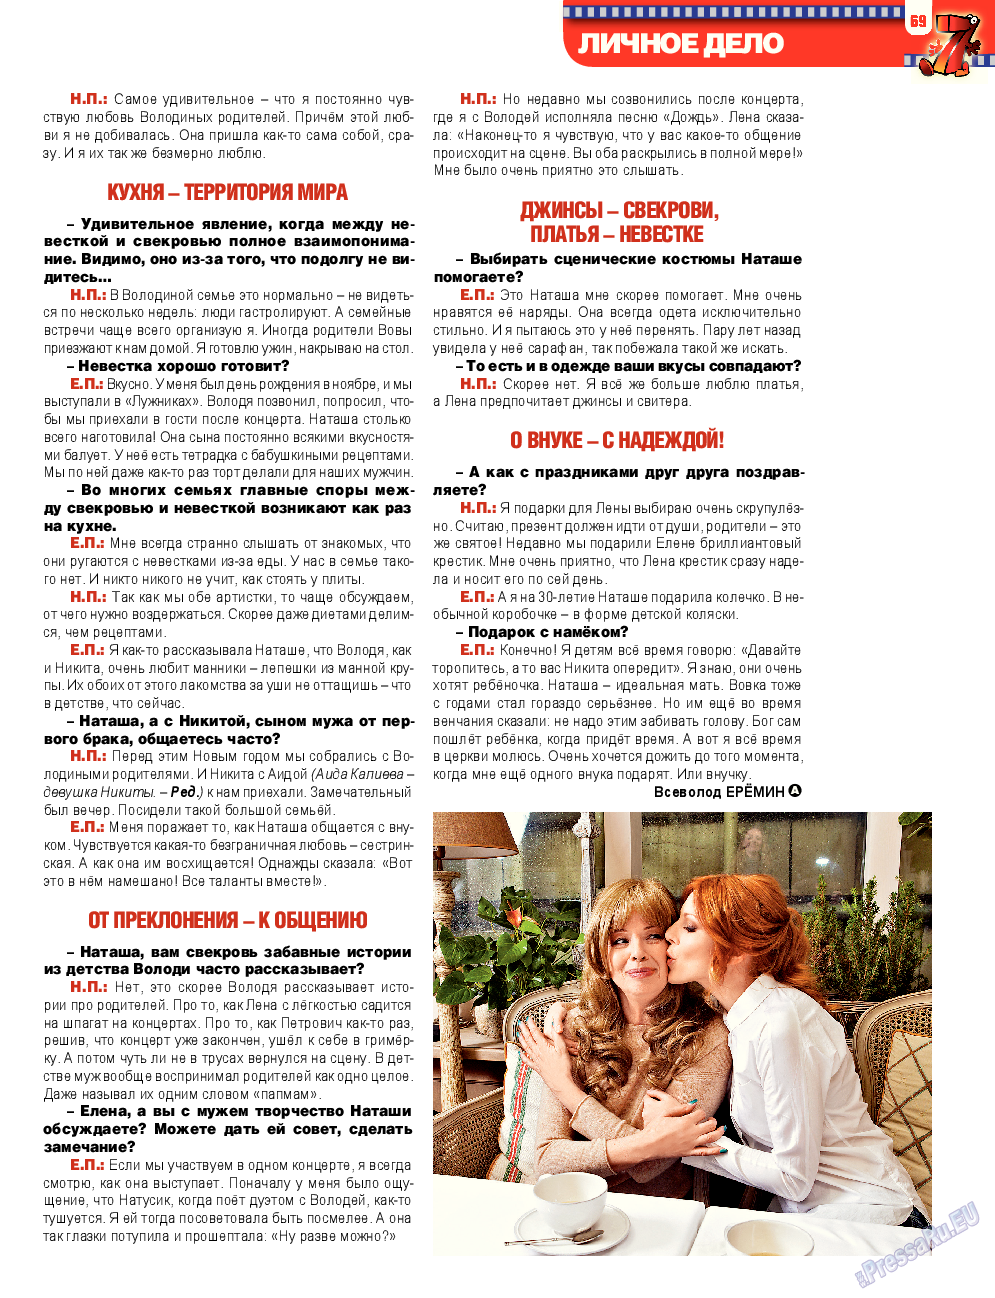 7плюс7я, журнал. 2013 №21 стр.69